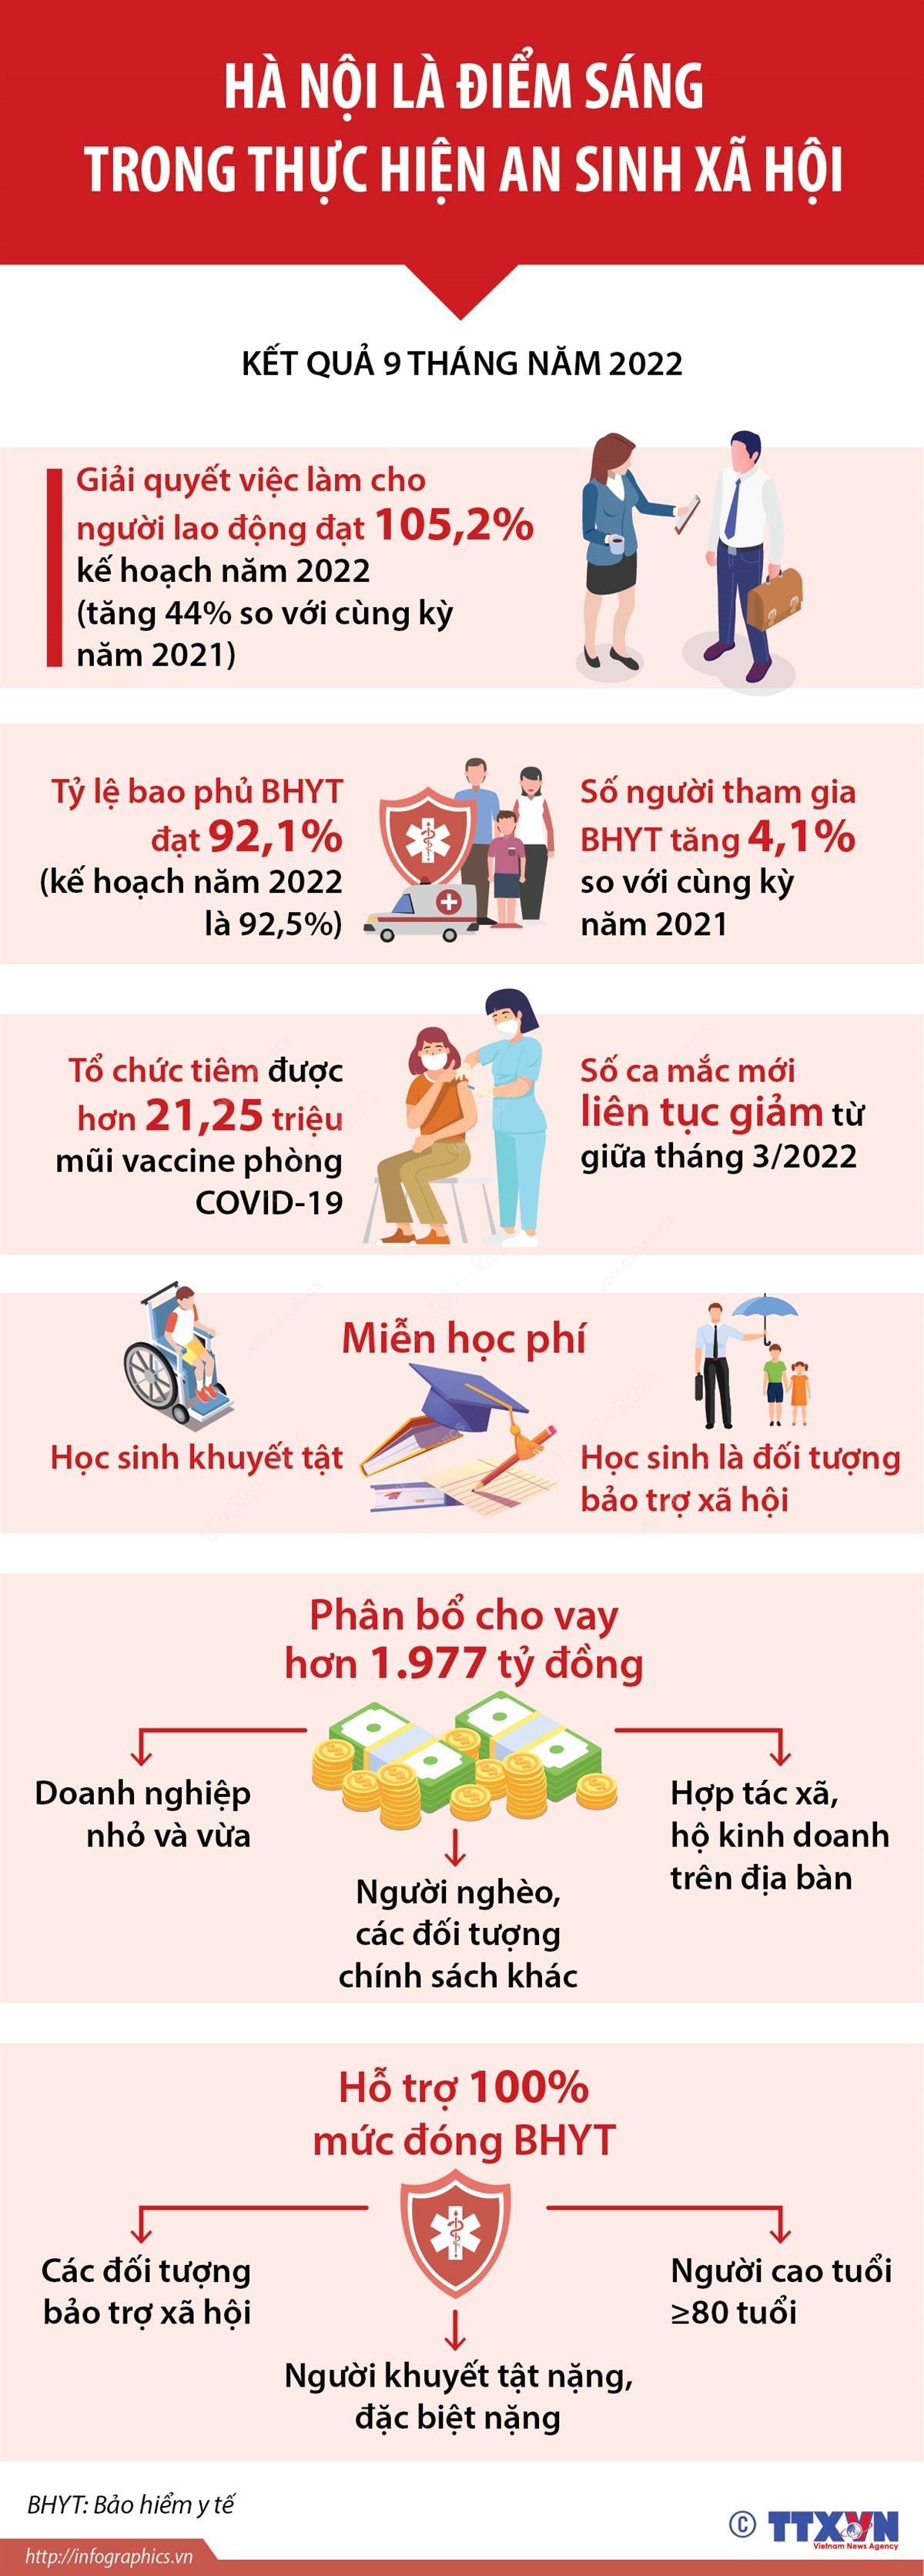 Mô hình an sinh xã hội Việt Nam